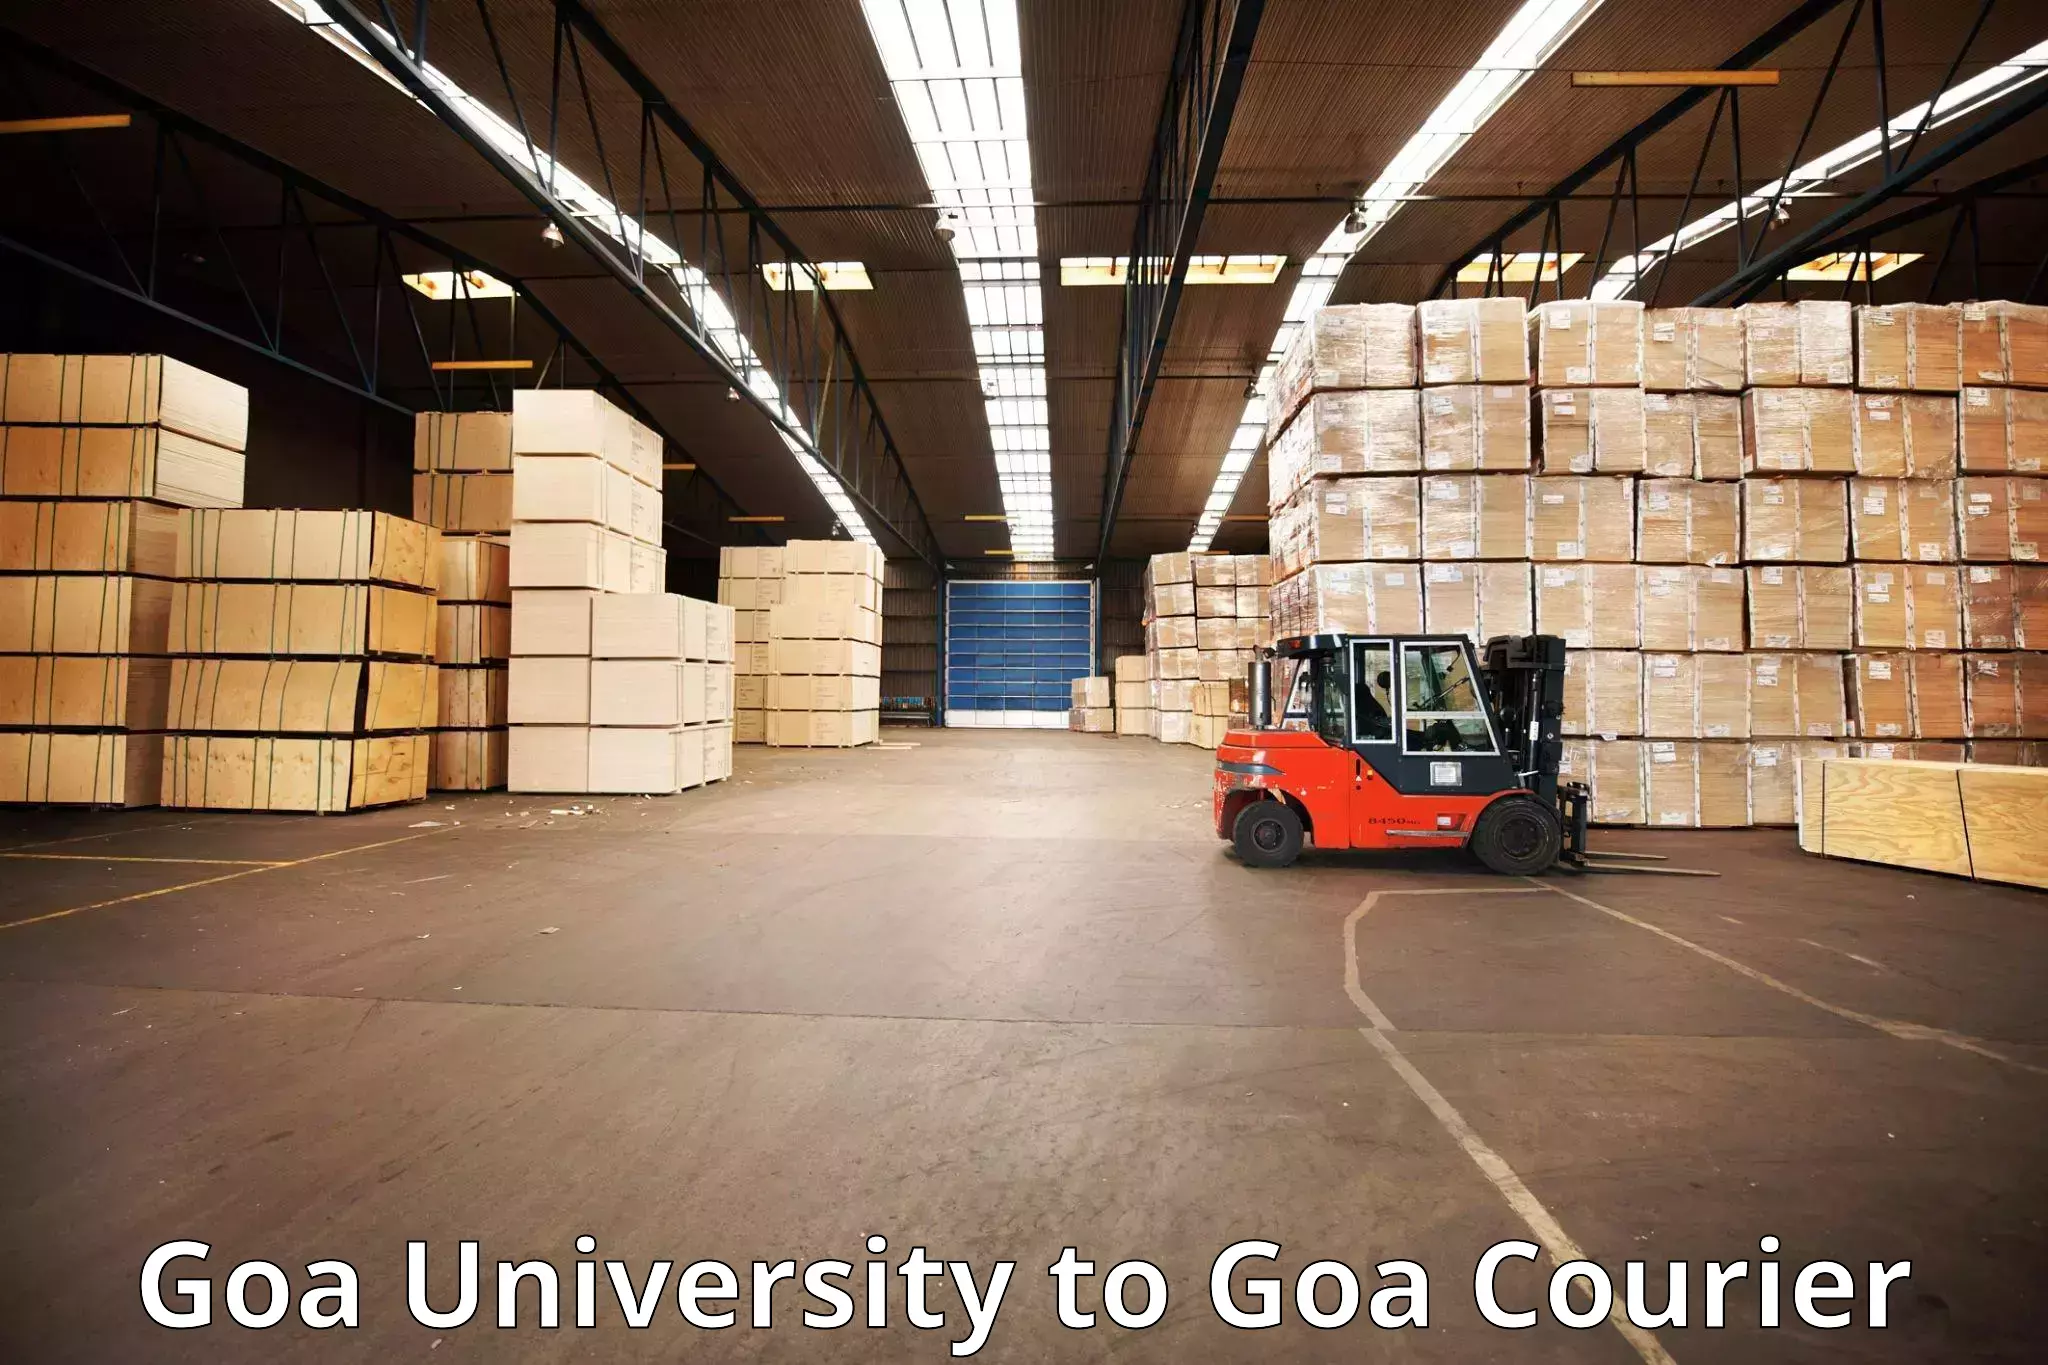 Luggage transfer service Goa University to Goa